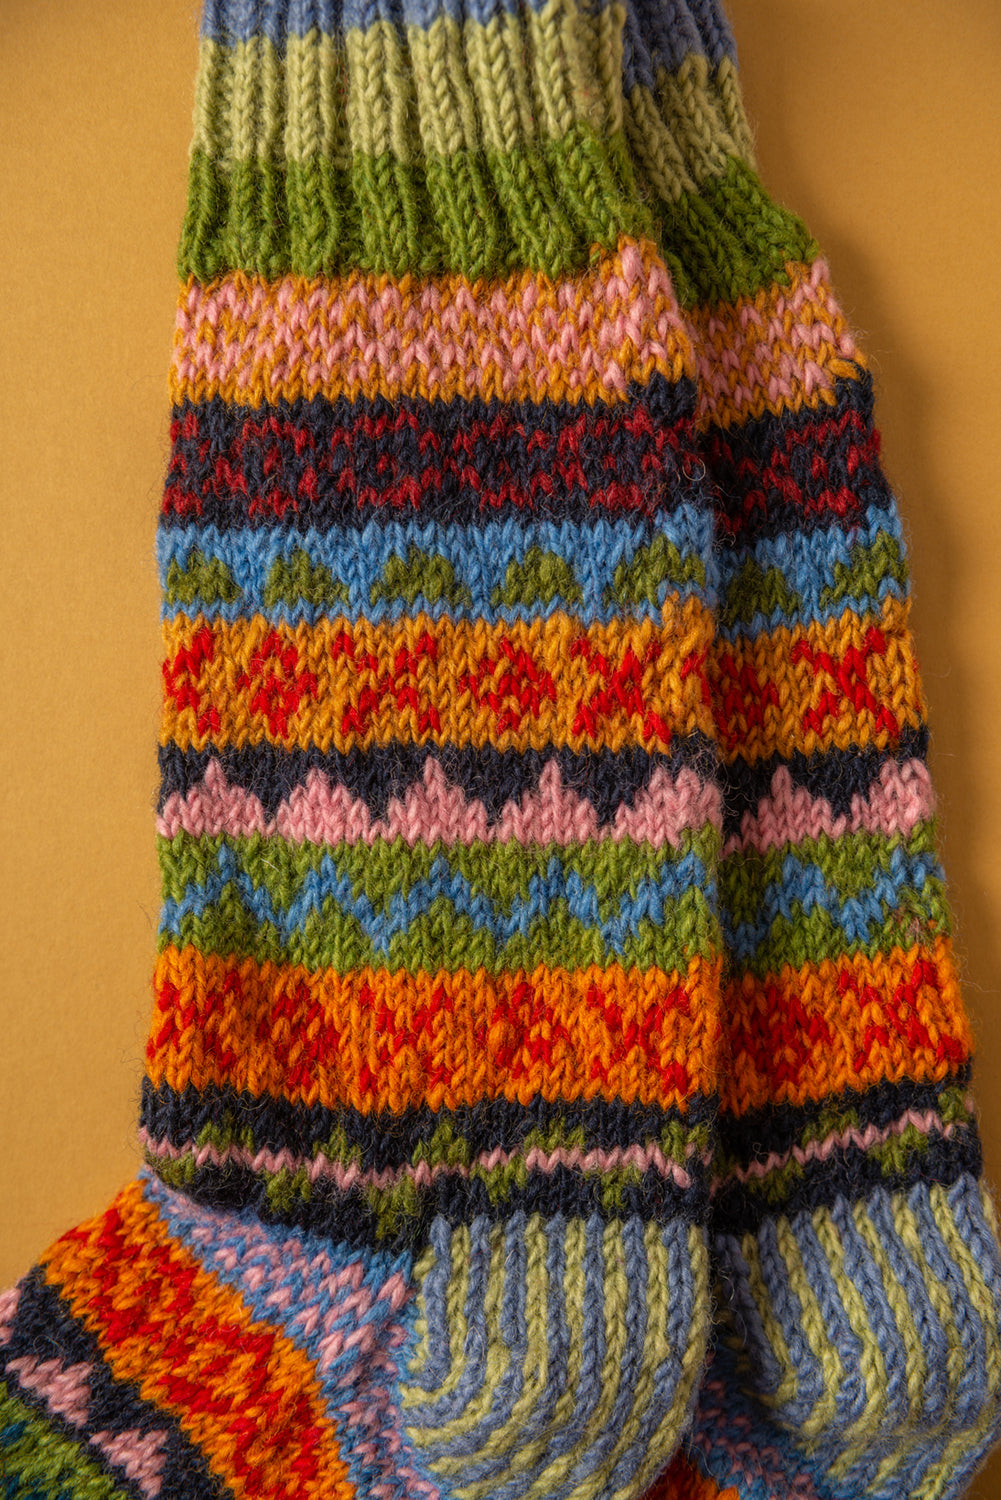 Hand Knitted Wool Women's Socks, Cosy Vintage Woolen Socks, Gift